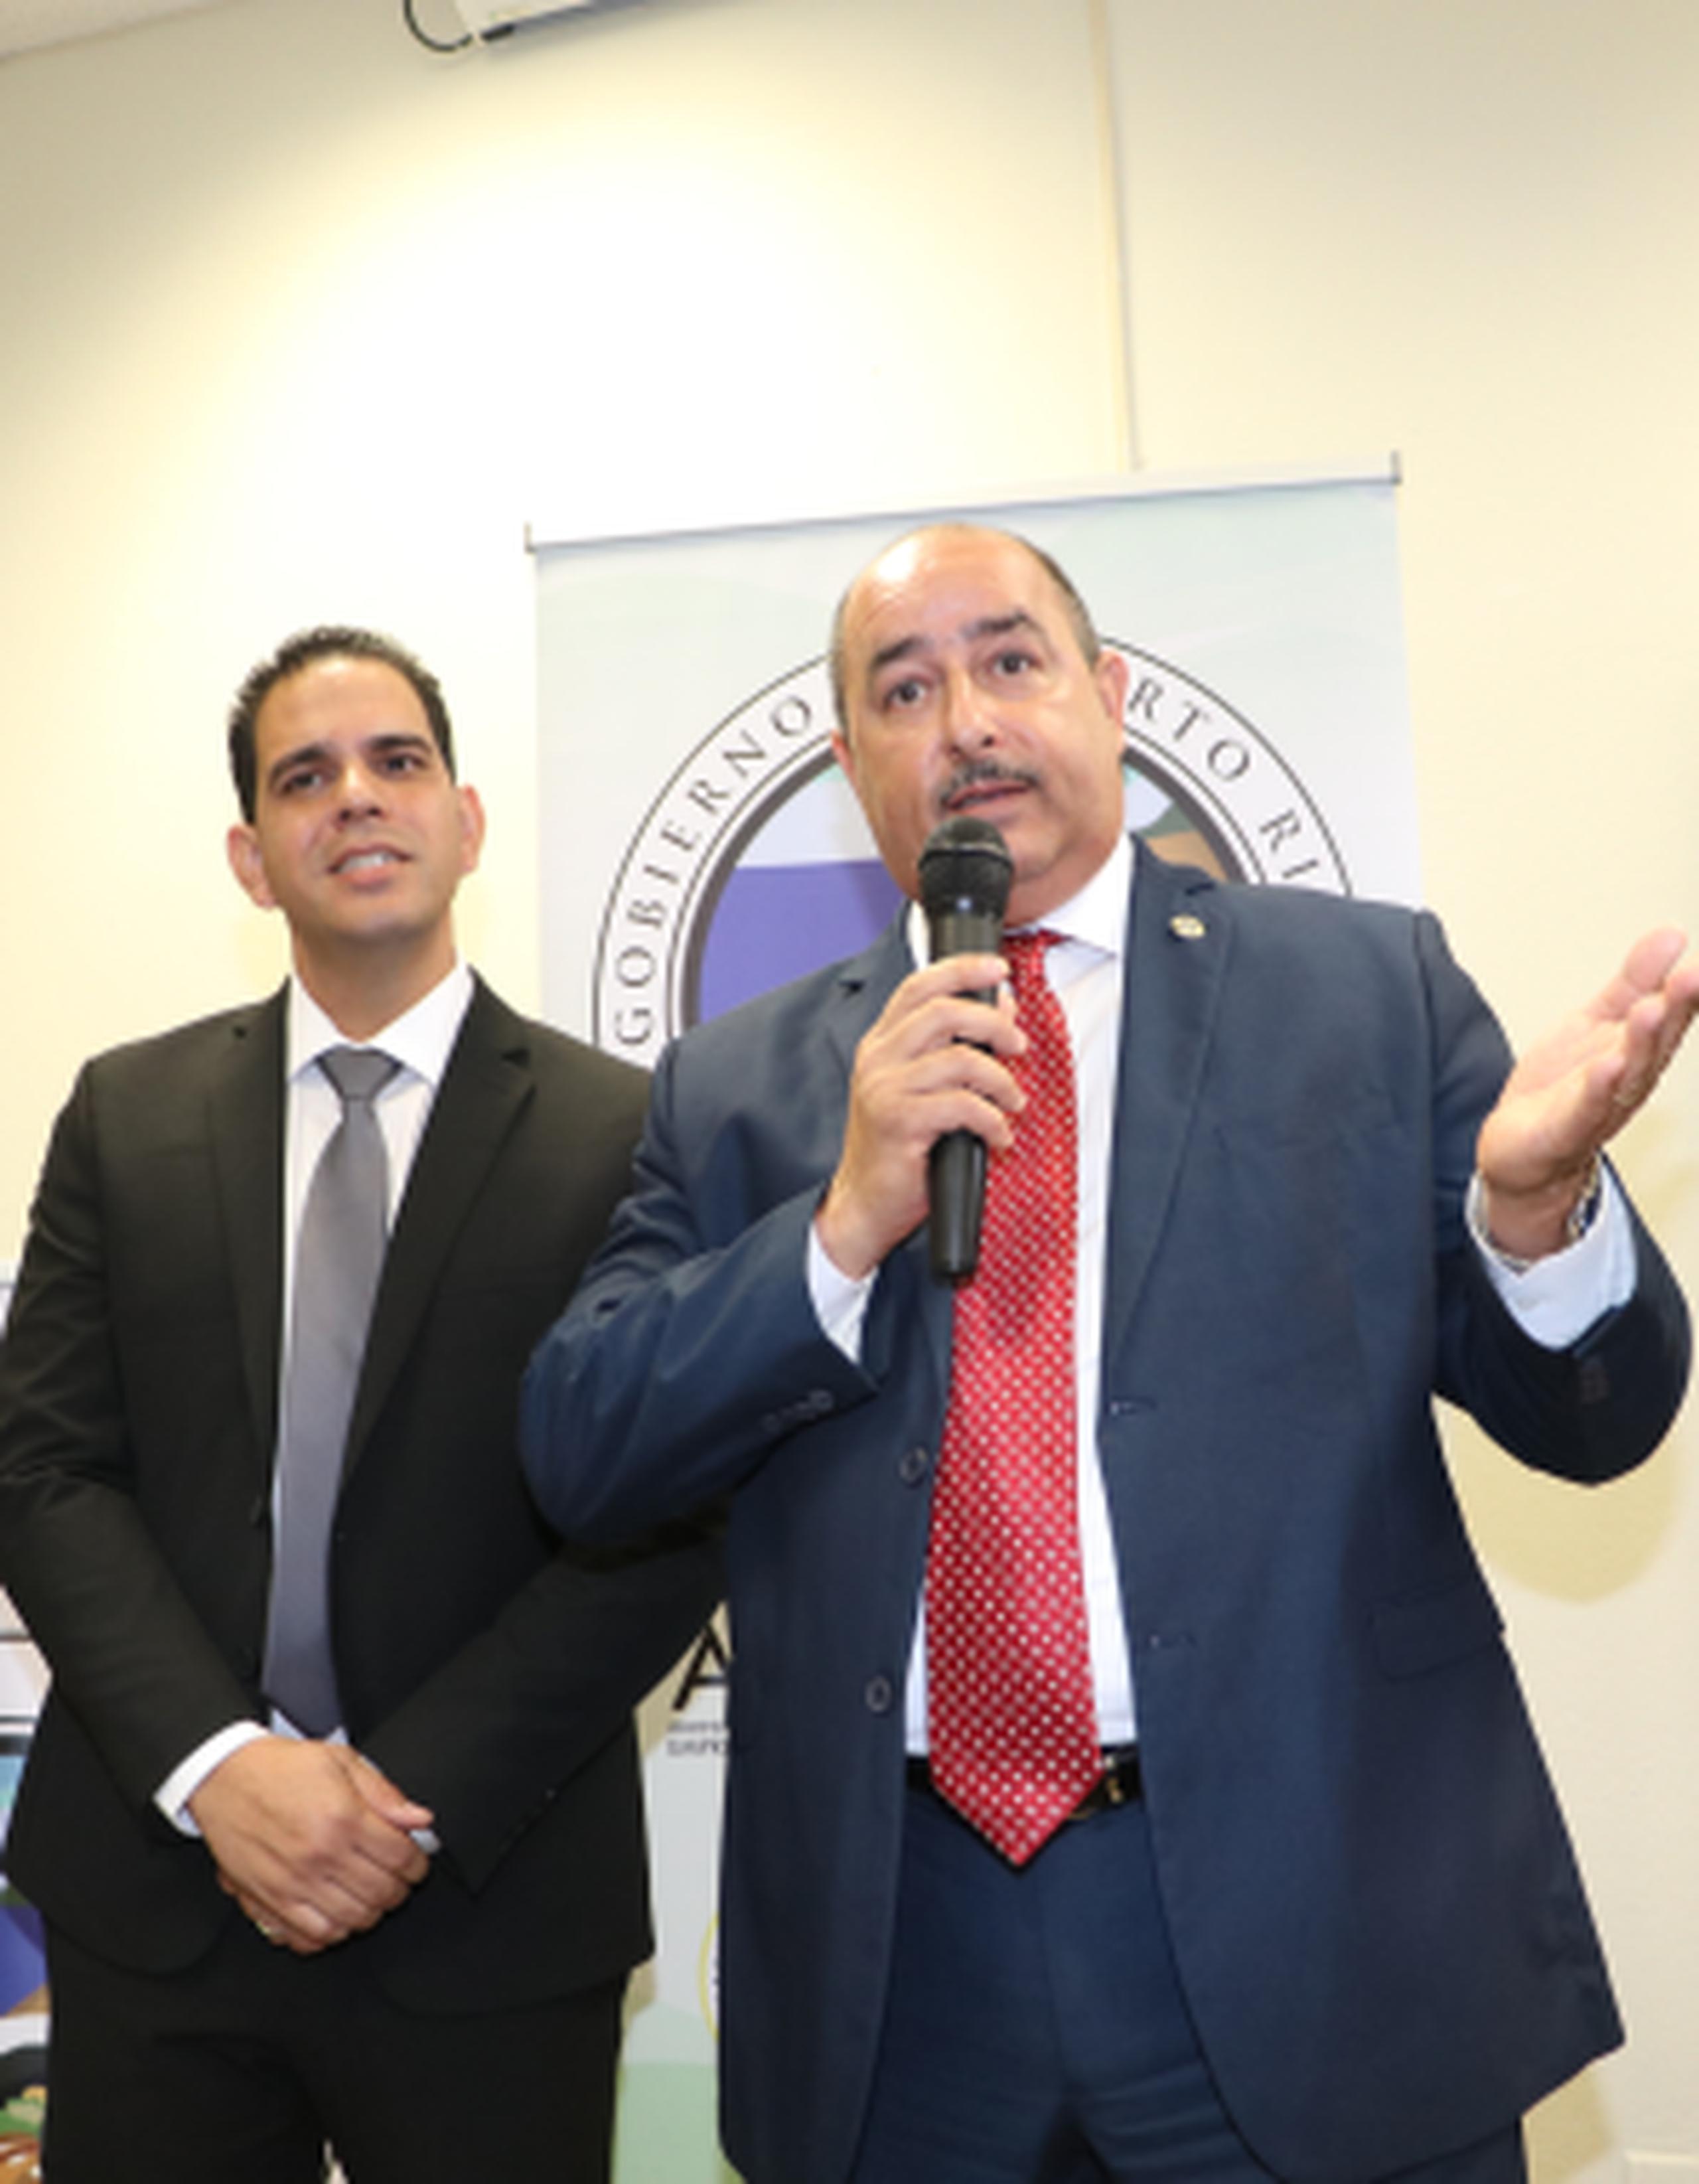 El secretario de Agricultura, Carlos Flores Ortega, anunció ayer el nombramiento de Jorge A. Campos Merced como administrador de la Oficina de la Reglamentación de la Industria Lechera. (Suministrada)